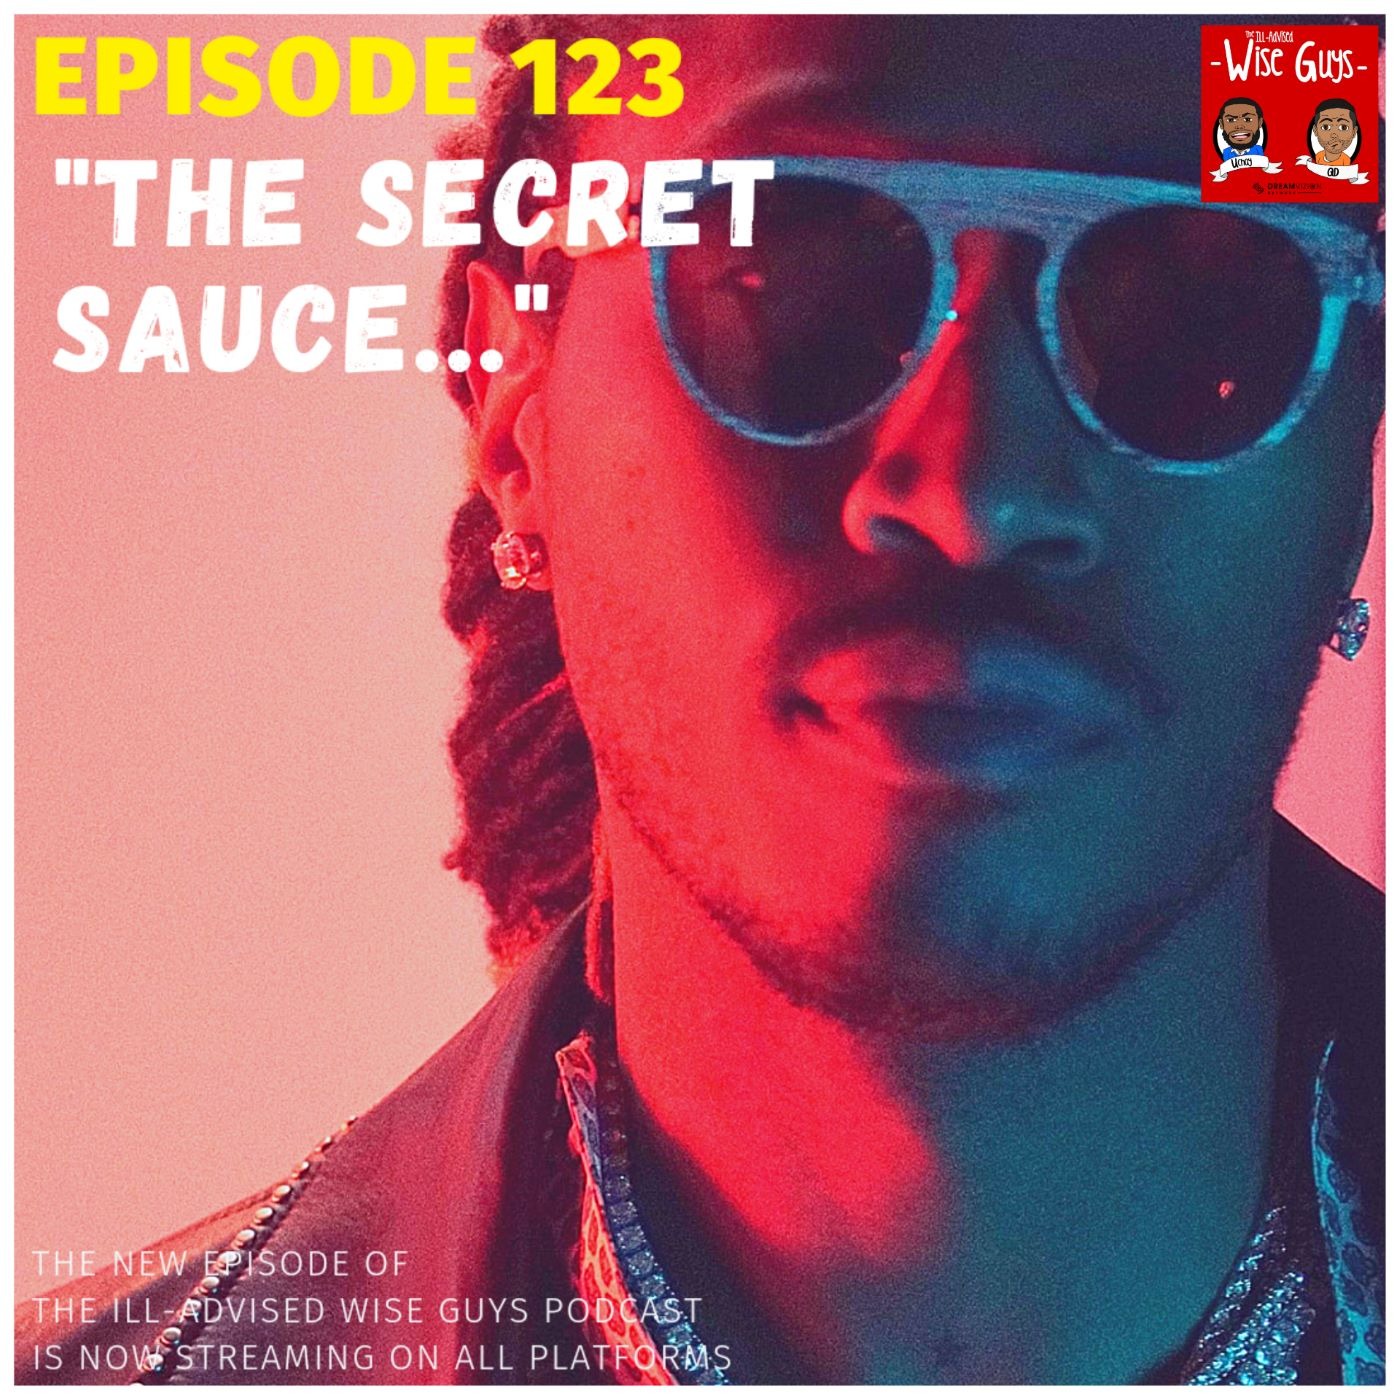 Episode 123 - "The Secret Sauce..."